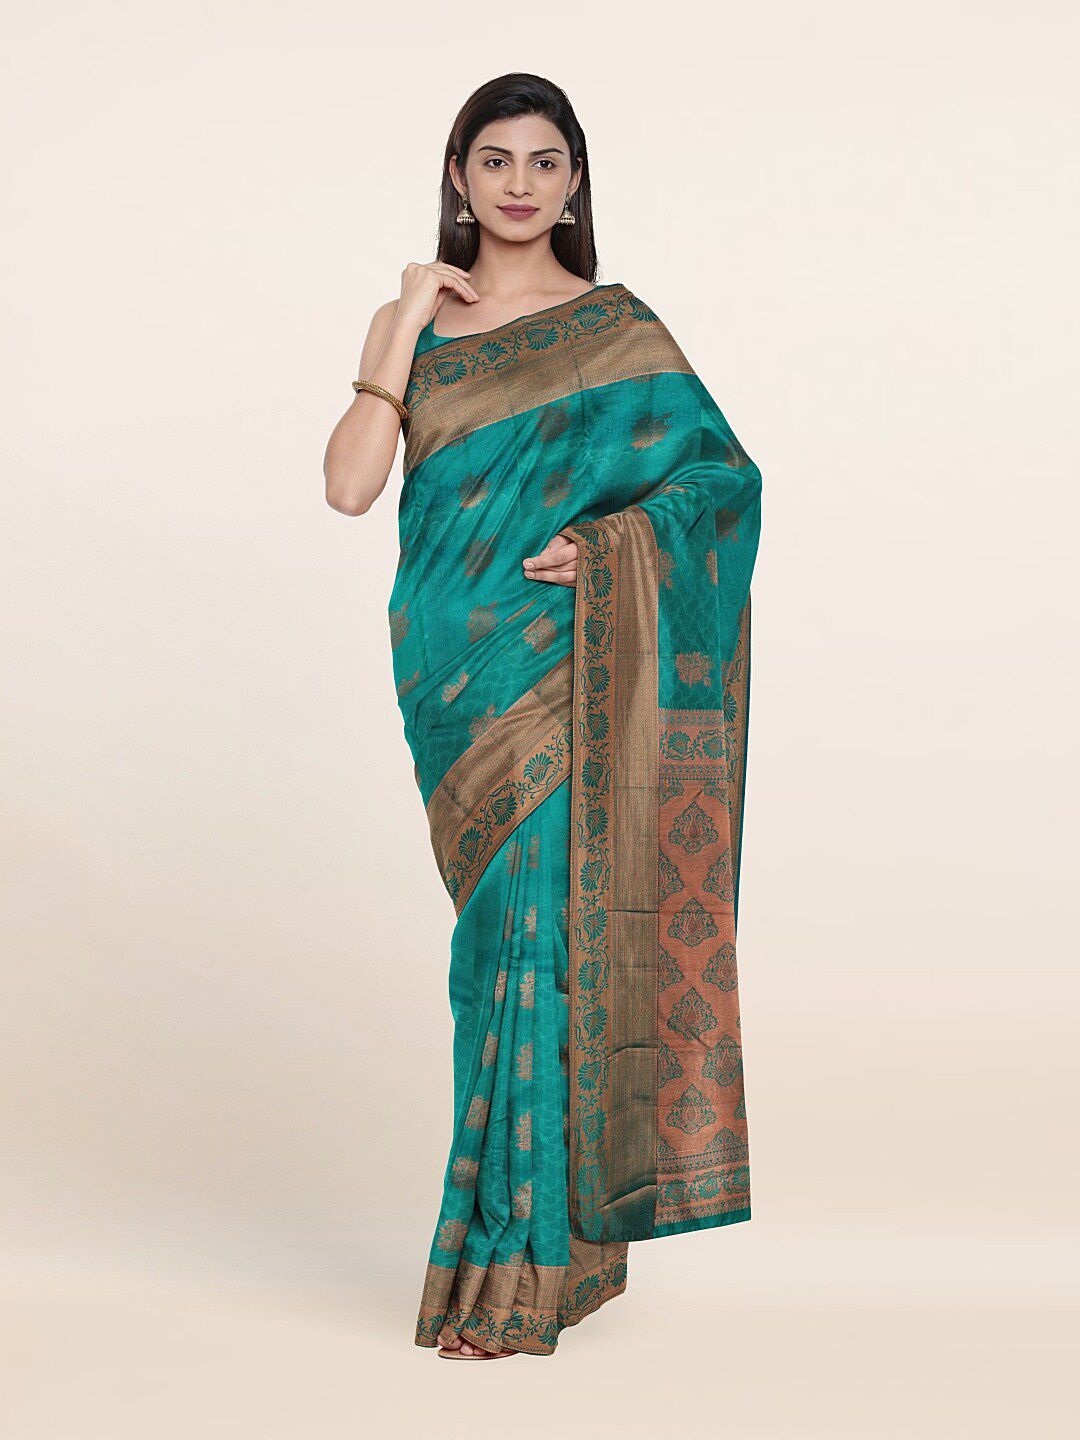 Pothys Blue & Copper-Toned Woven Design Zari Pure Silk Saree Price in India